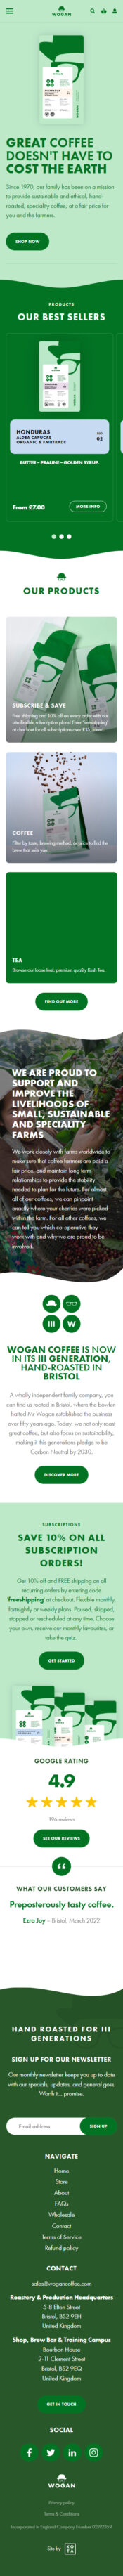 Wogan coffee